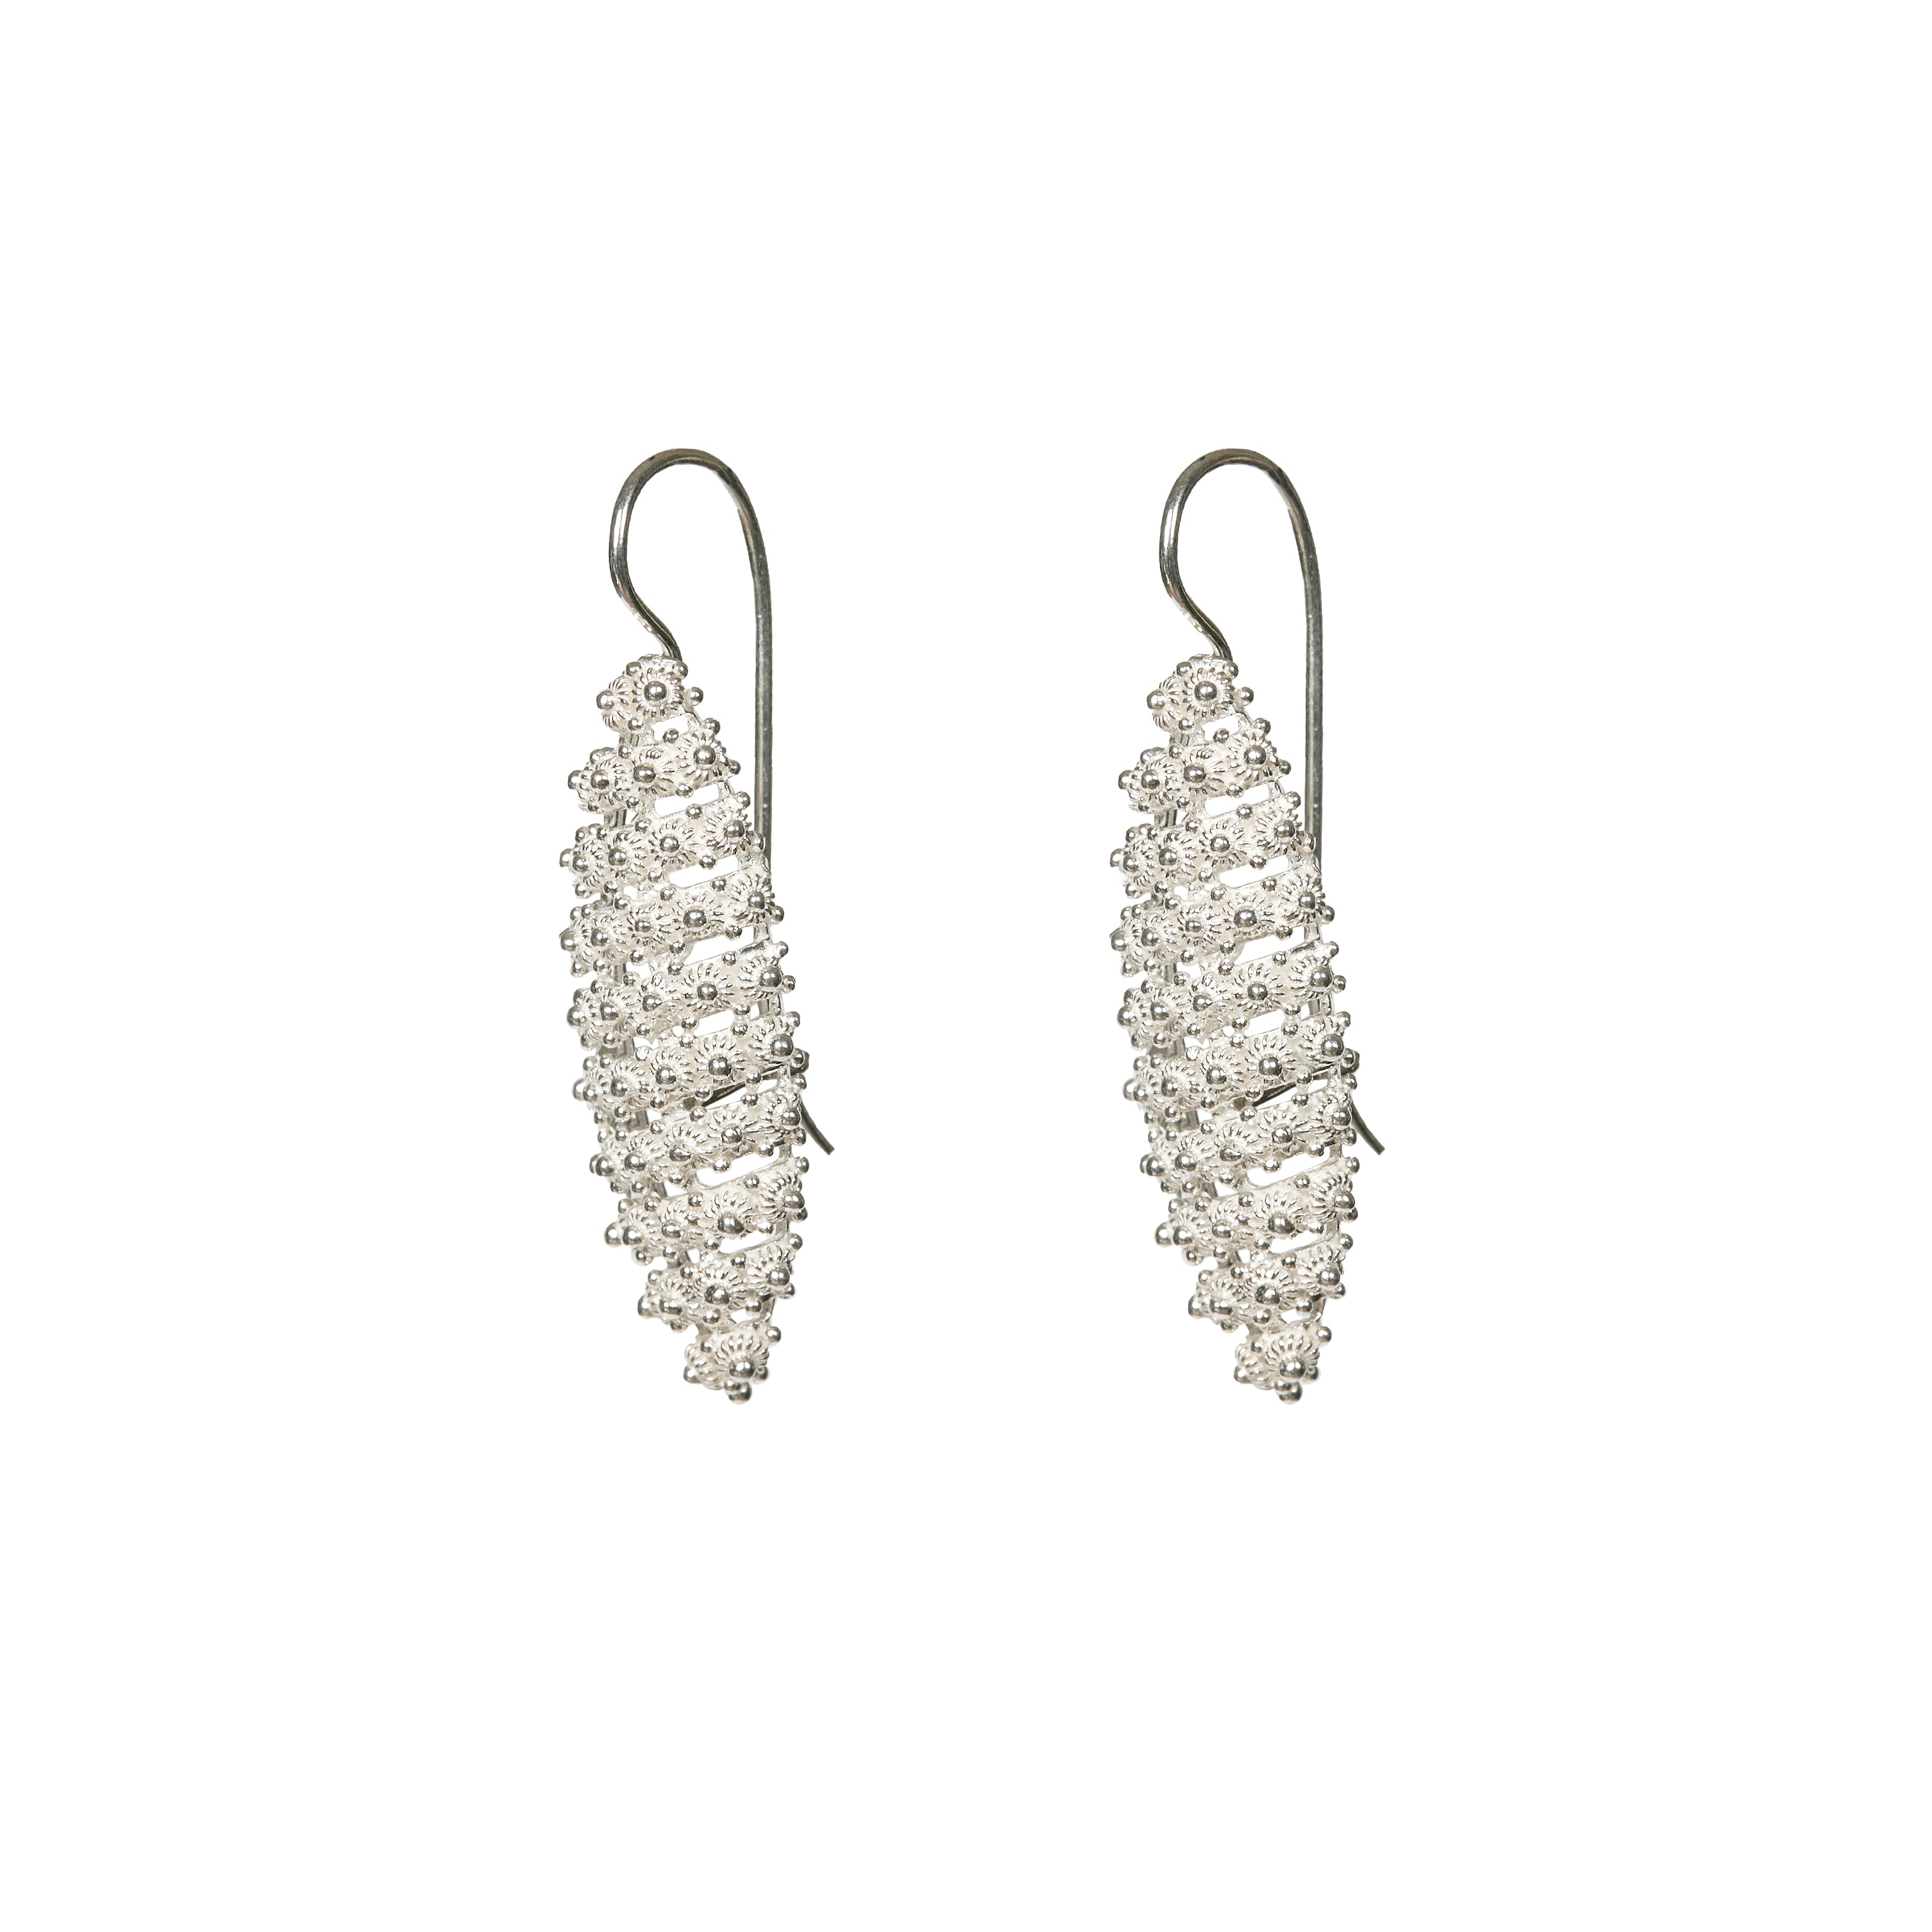 JEANETTE Earrings - Filigree - Silver 925/1000 | Silver 925/1000 MEA AYAYA